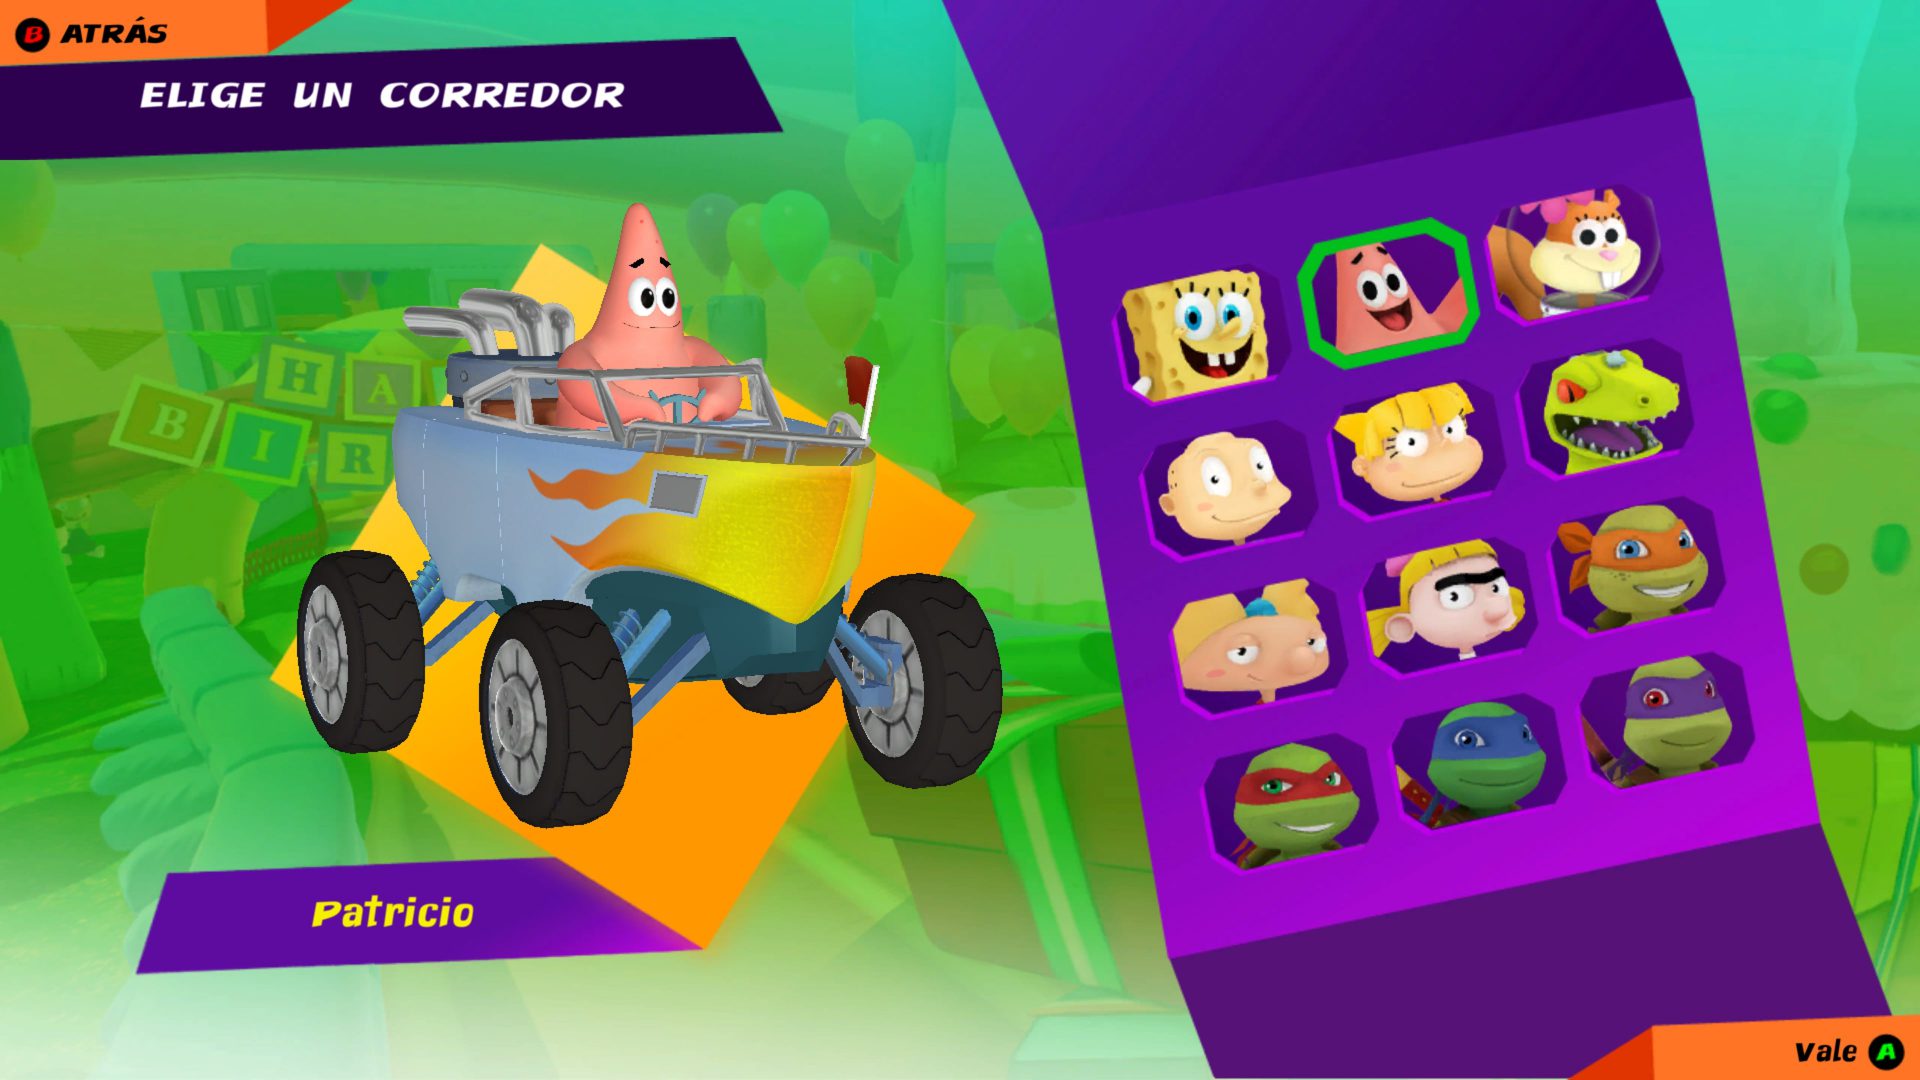 Análisis de Nickelodeon Kart Racers - Analizamos para Xbox One Nickelodeon Kart Racers un juego enfocado para los más pequeños de la casa.